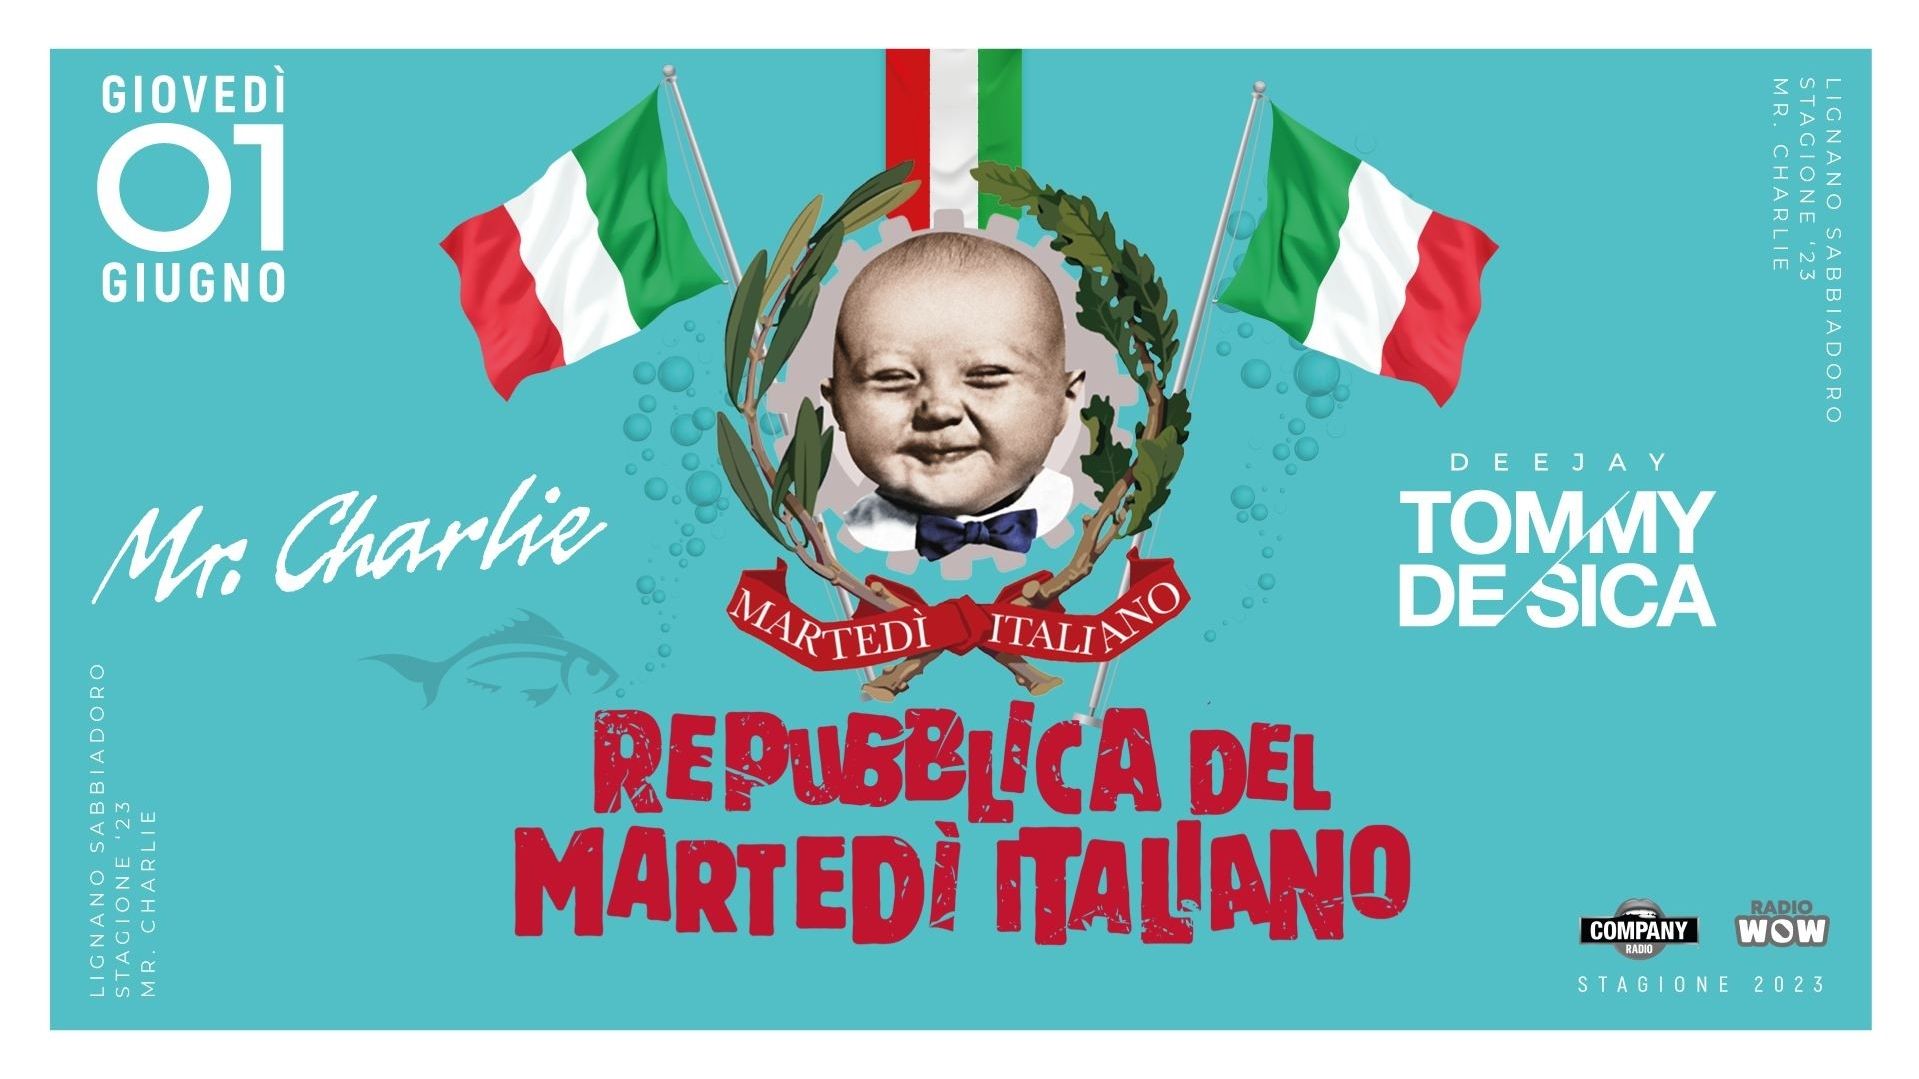 Repubblica del Martedì Italiano